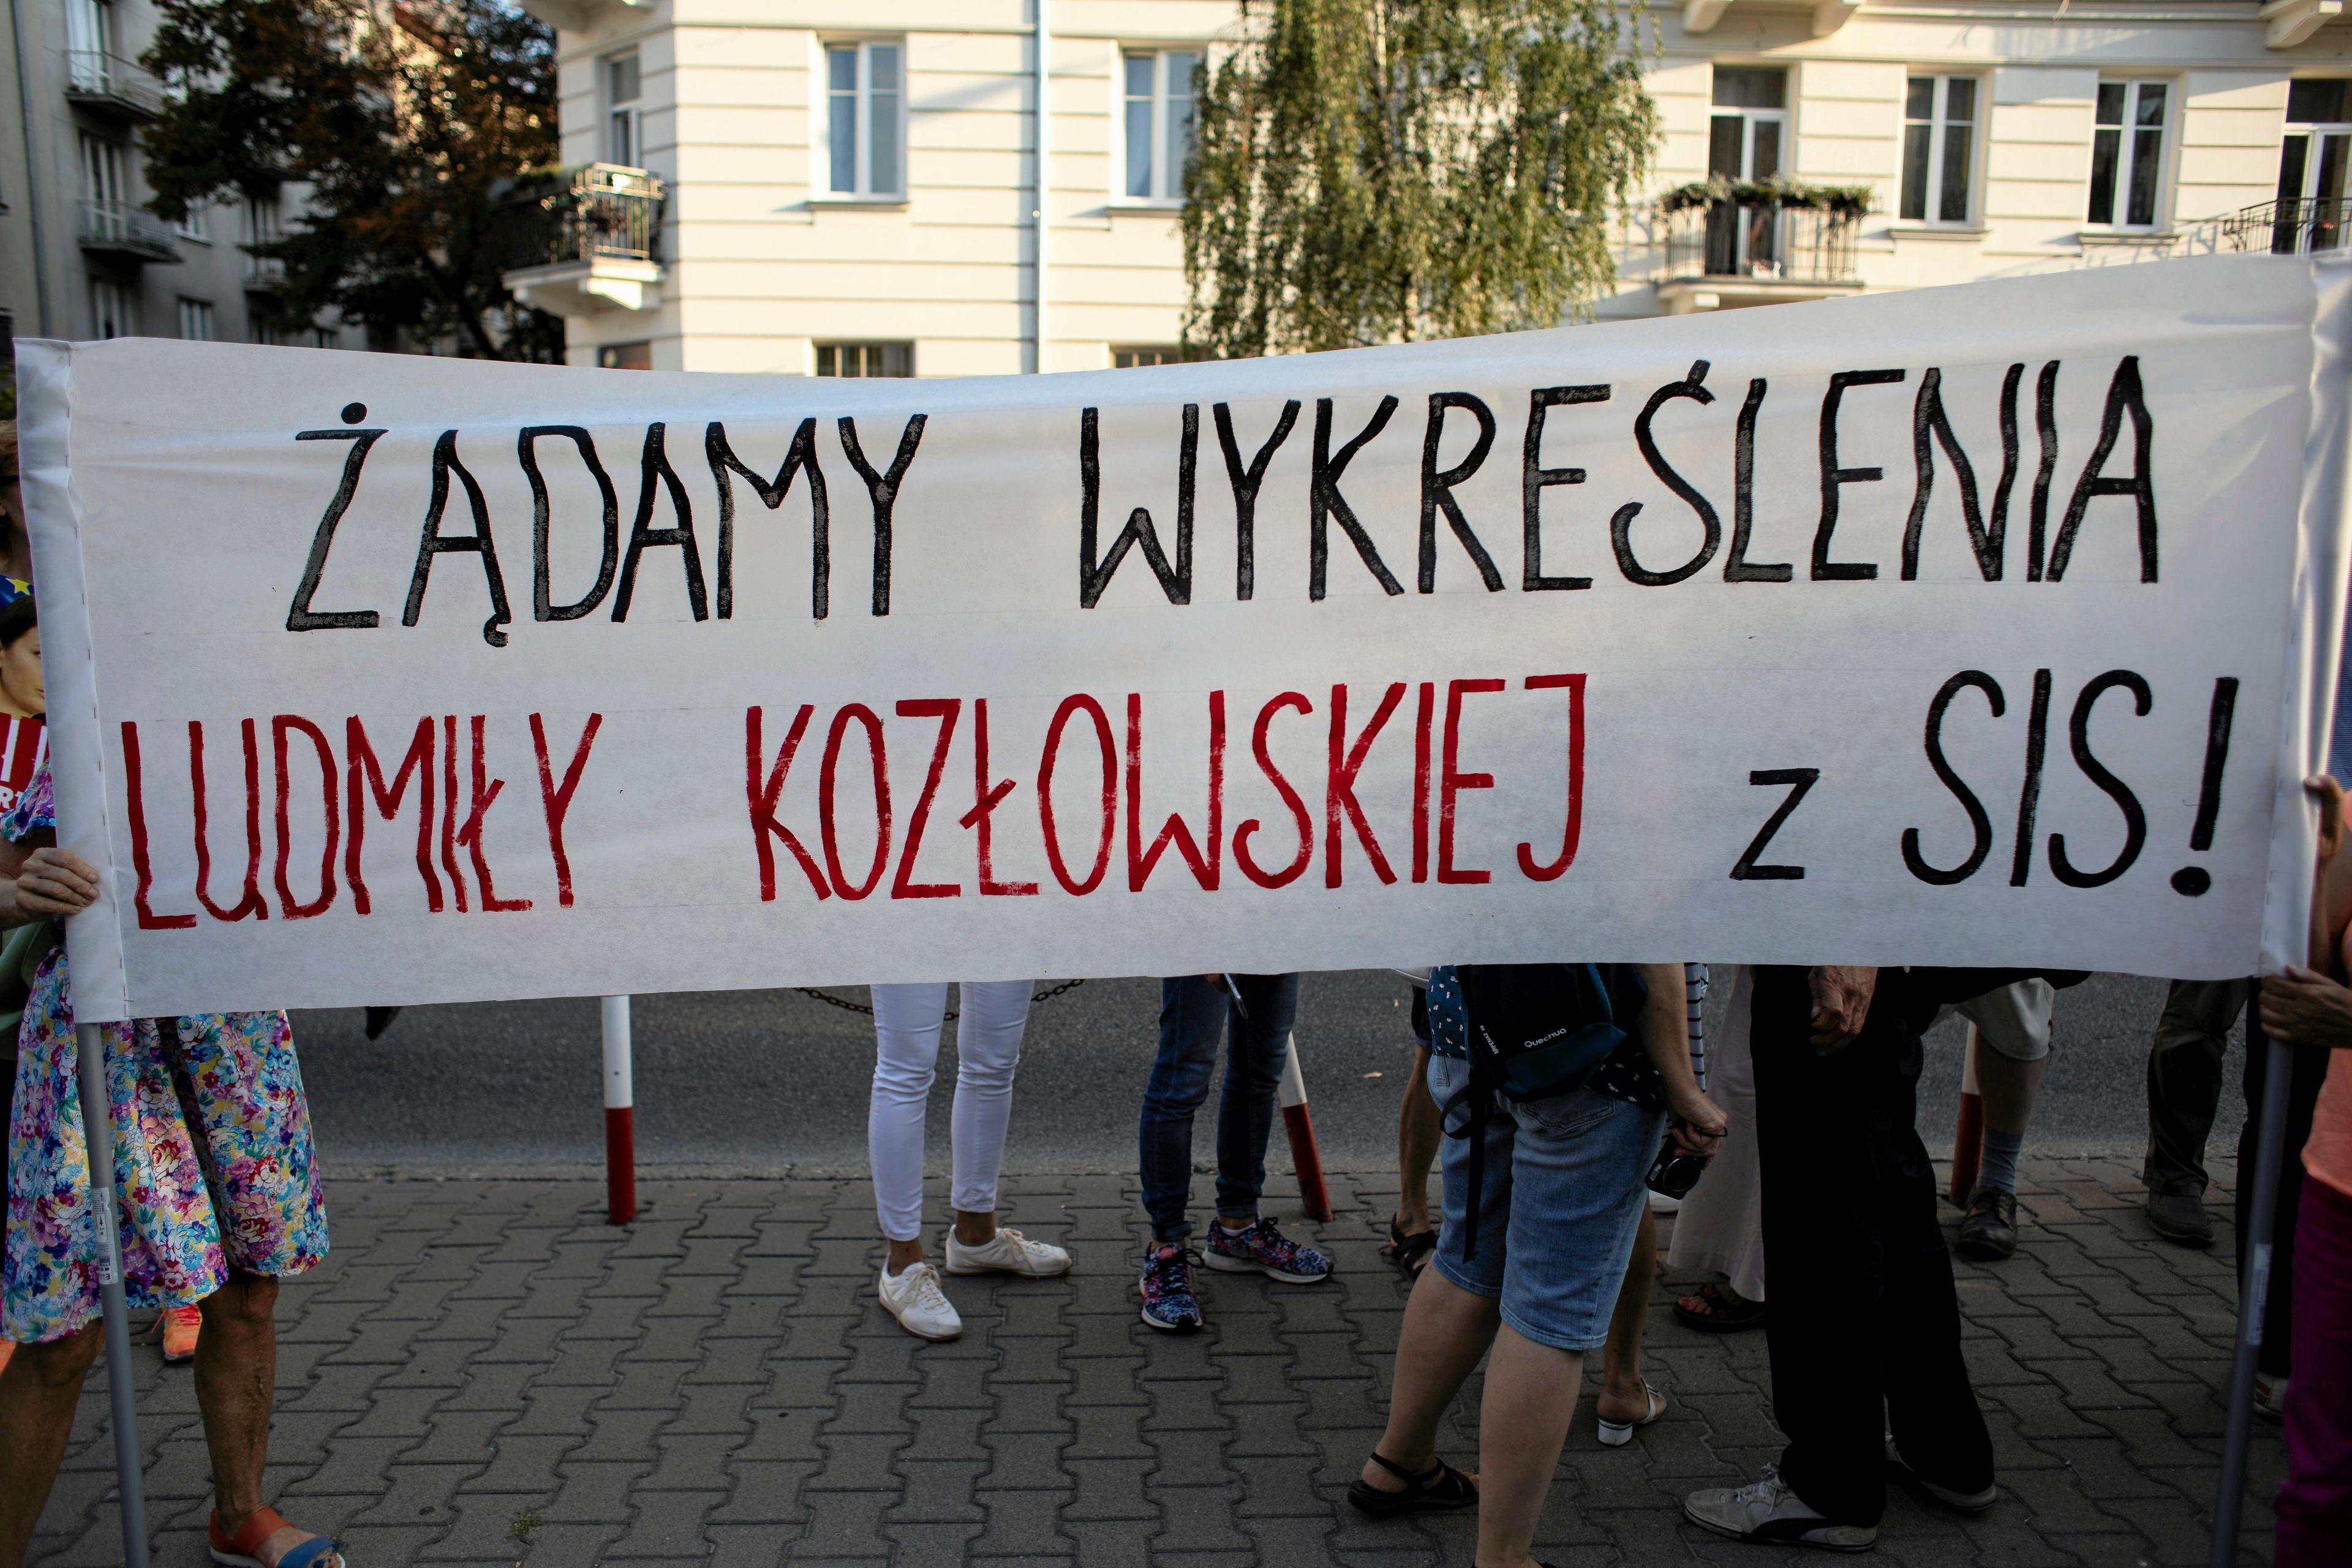 demonstranci z napisem: „Żądamy wykreślenia Ludmiły Kozłowskiej z SIS!"